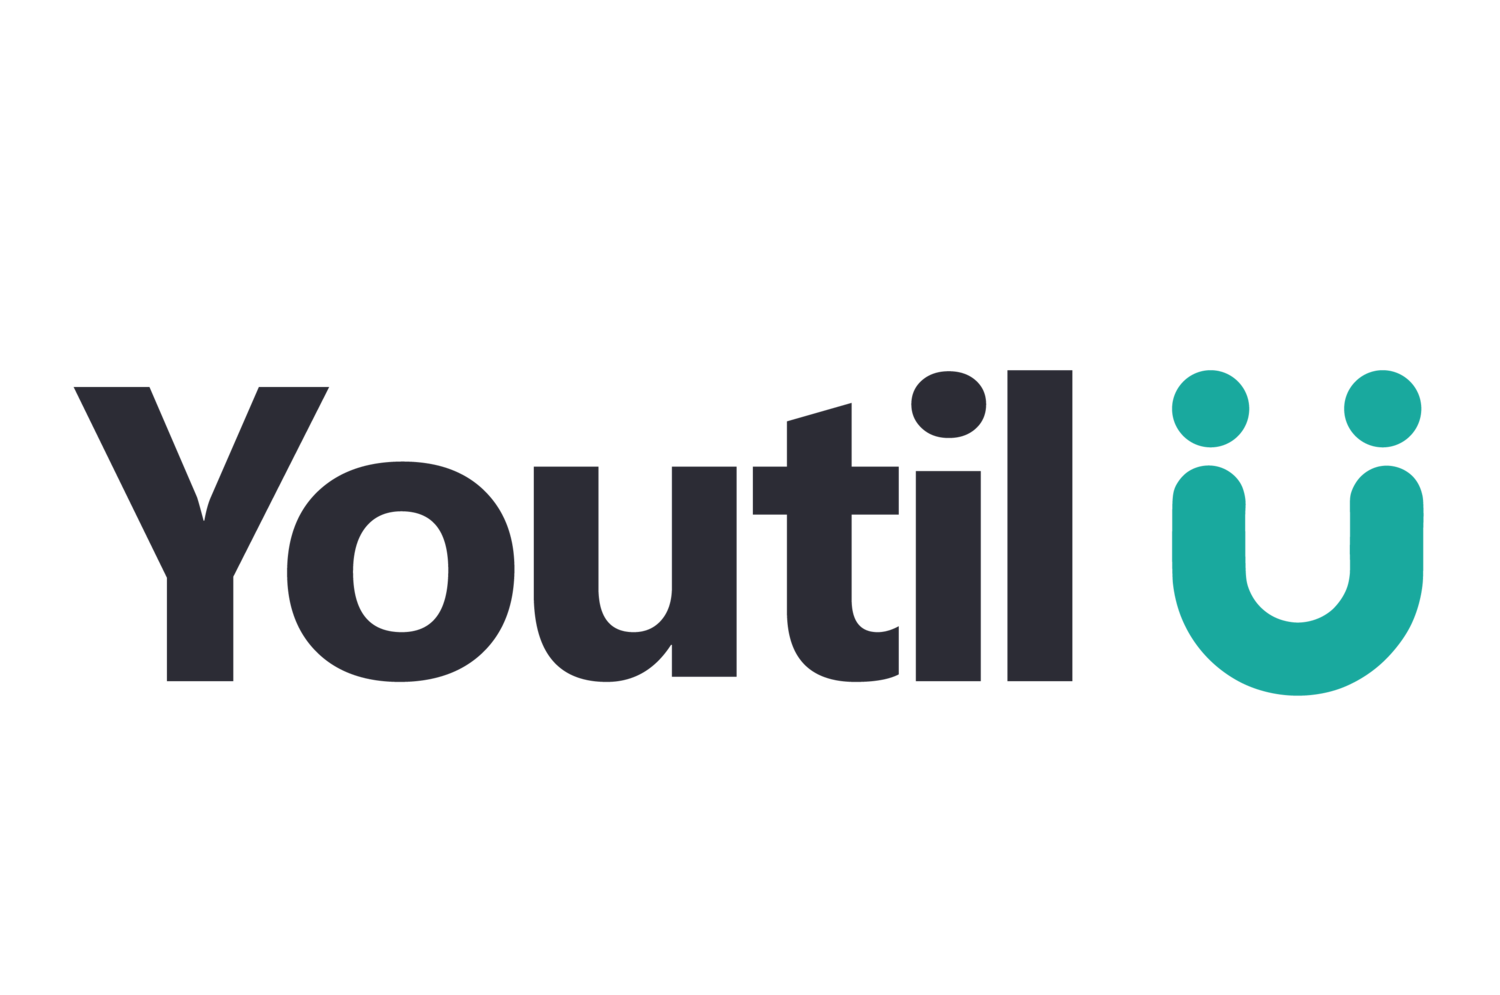 Youtil.com